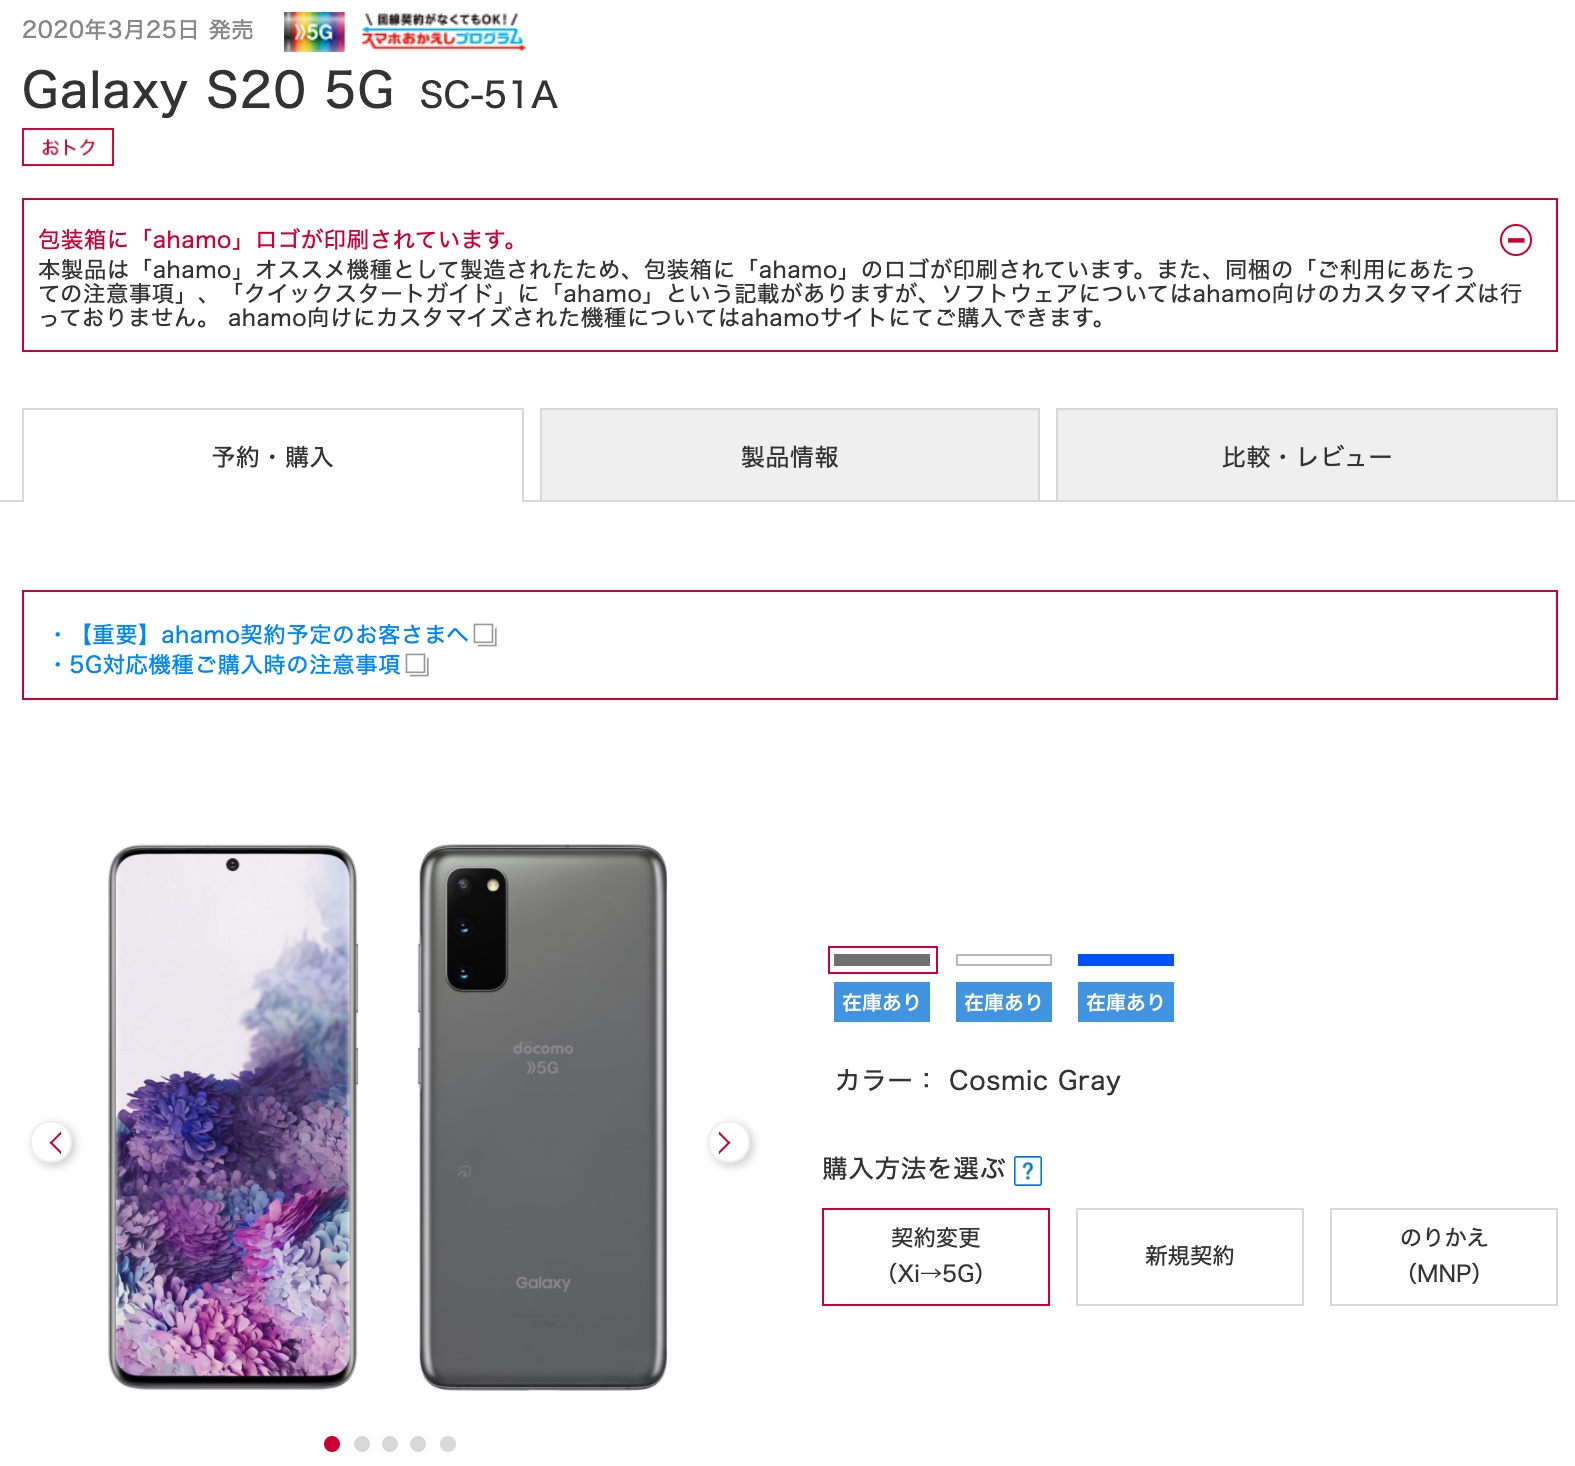 ドコモオンラインショップにてフラッグシップスマホ Galaxy S 5g Sc 51a が販売再開 包装箱がahamoロゴ版 価格は5万70円から S Max